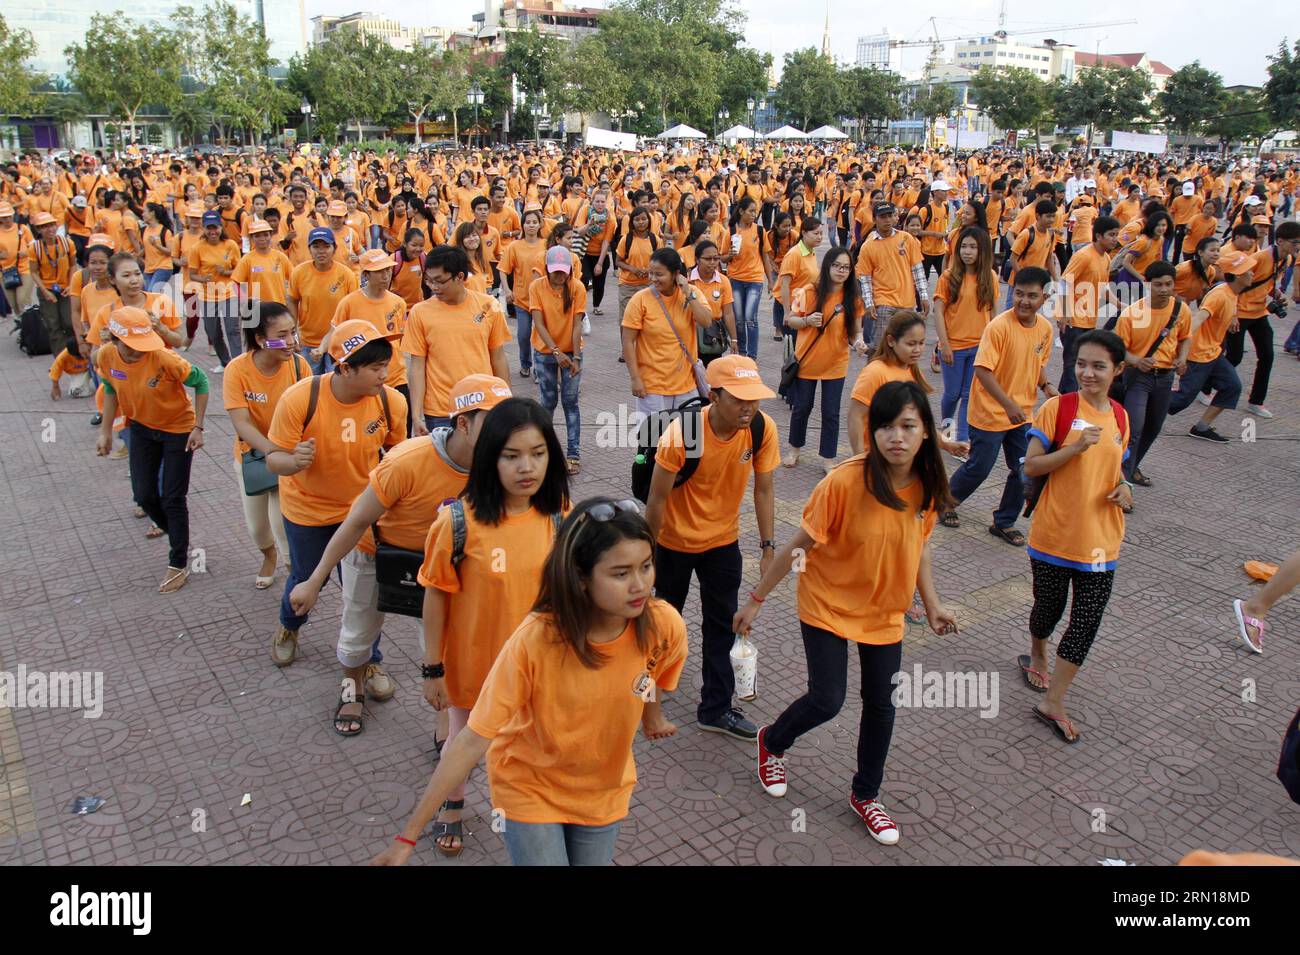 (141206) -- PHNOM PENH, 6. Dezember 2014 -- Junge Menschen tanzen in Phnom Penh, Kambodscha, 6. Dezember 2014. Etwa 1.500 junge Kambodschaner führten am Samstag den Madison auf, einen beliebten Tanz während der Khmer-Hochzeitsempfänge und Neujahrsfeiern, um in Phnom Penh ein Ende der Gewalt gegen Frauen und Mädchen zu fordern, sagte ein Organisator. KAMBODSCHA-PHNOM PENH-ANTI-GEWALT-TANZ Sovannara PUBLICATIONxNOTxINxCHN Phnom PENH DEC 6 2014 Junge Prominente Tanz in Phnom Penh Kambodscha DEC 6 2014 ungefähr 1 500 junge Kambodschaner AM Samstag führten den Madison A Popular Dance während Khmer auf Stockfoto